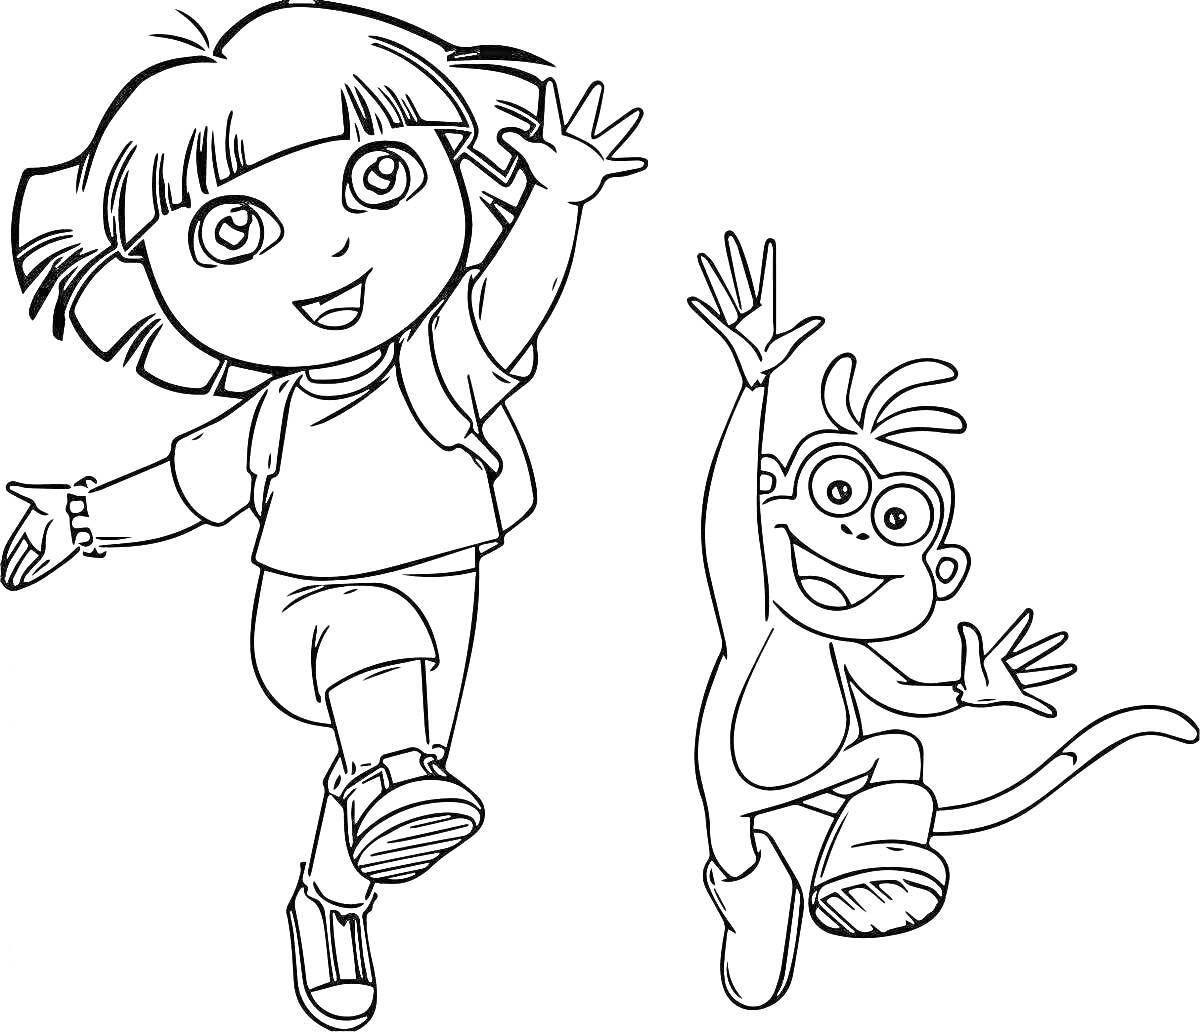 Раскраска Дора и её друг обезьянка Бутс, радостно прыгают